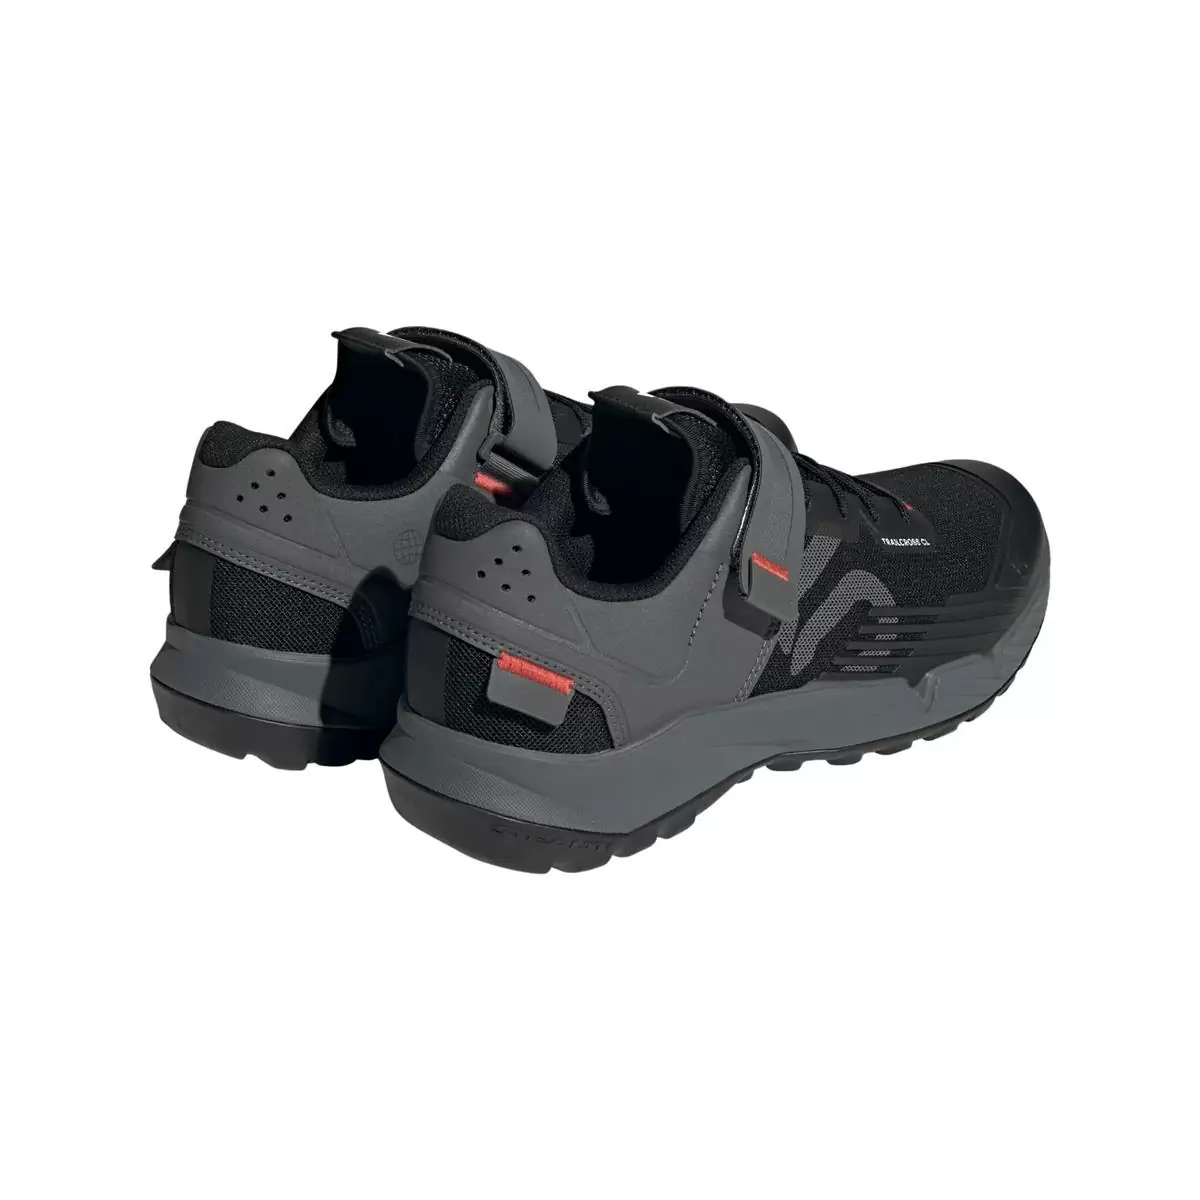 Clip 5.10 Trailcross MTB Shoes Black/Grey Size 44.5 #5